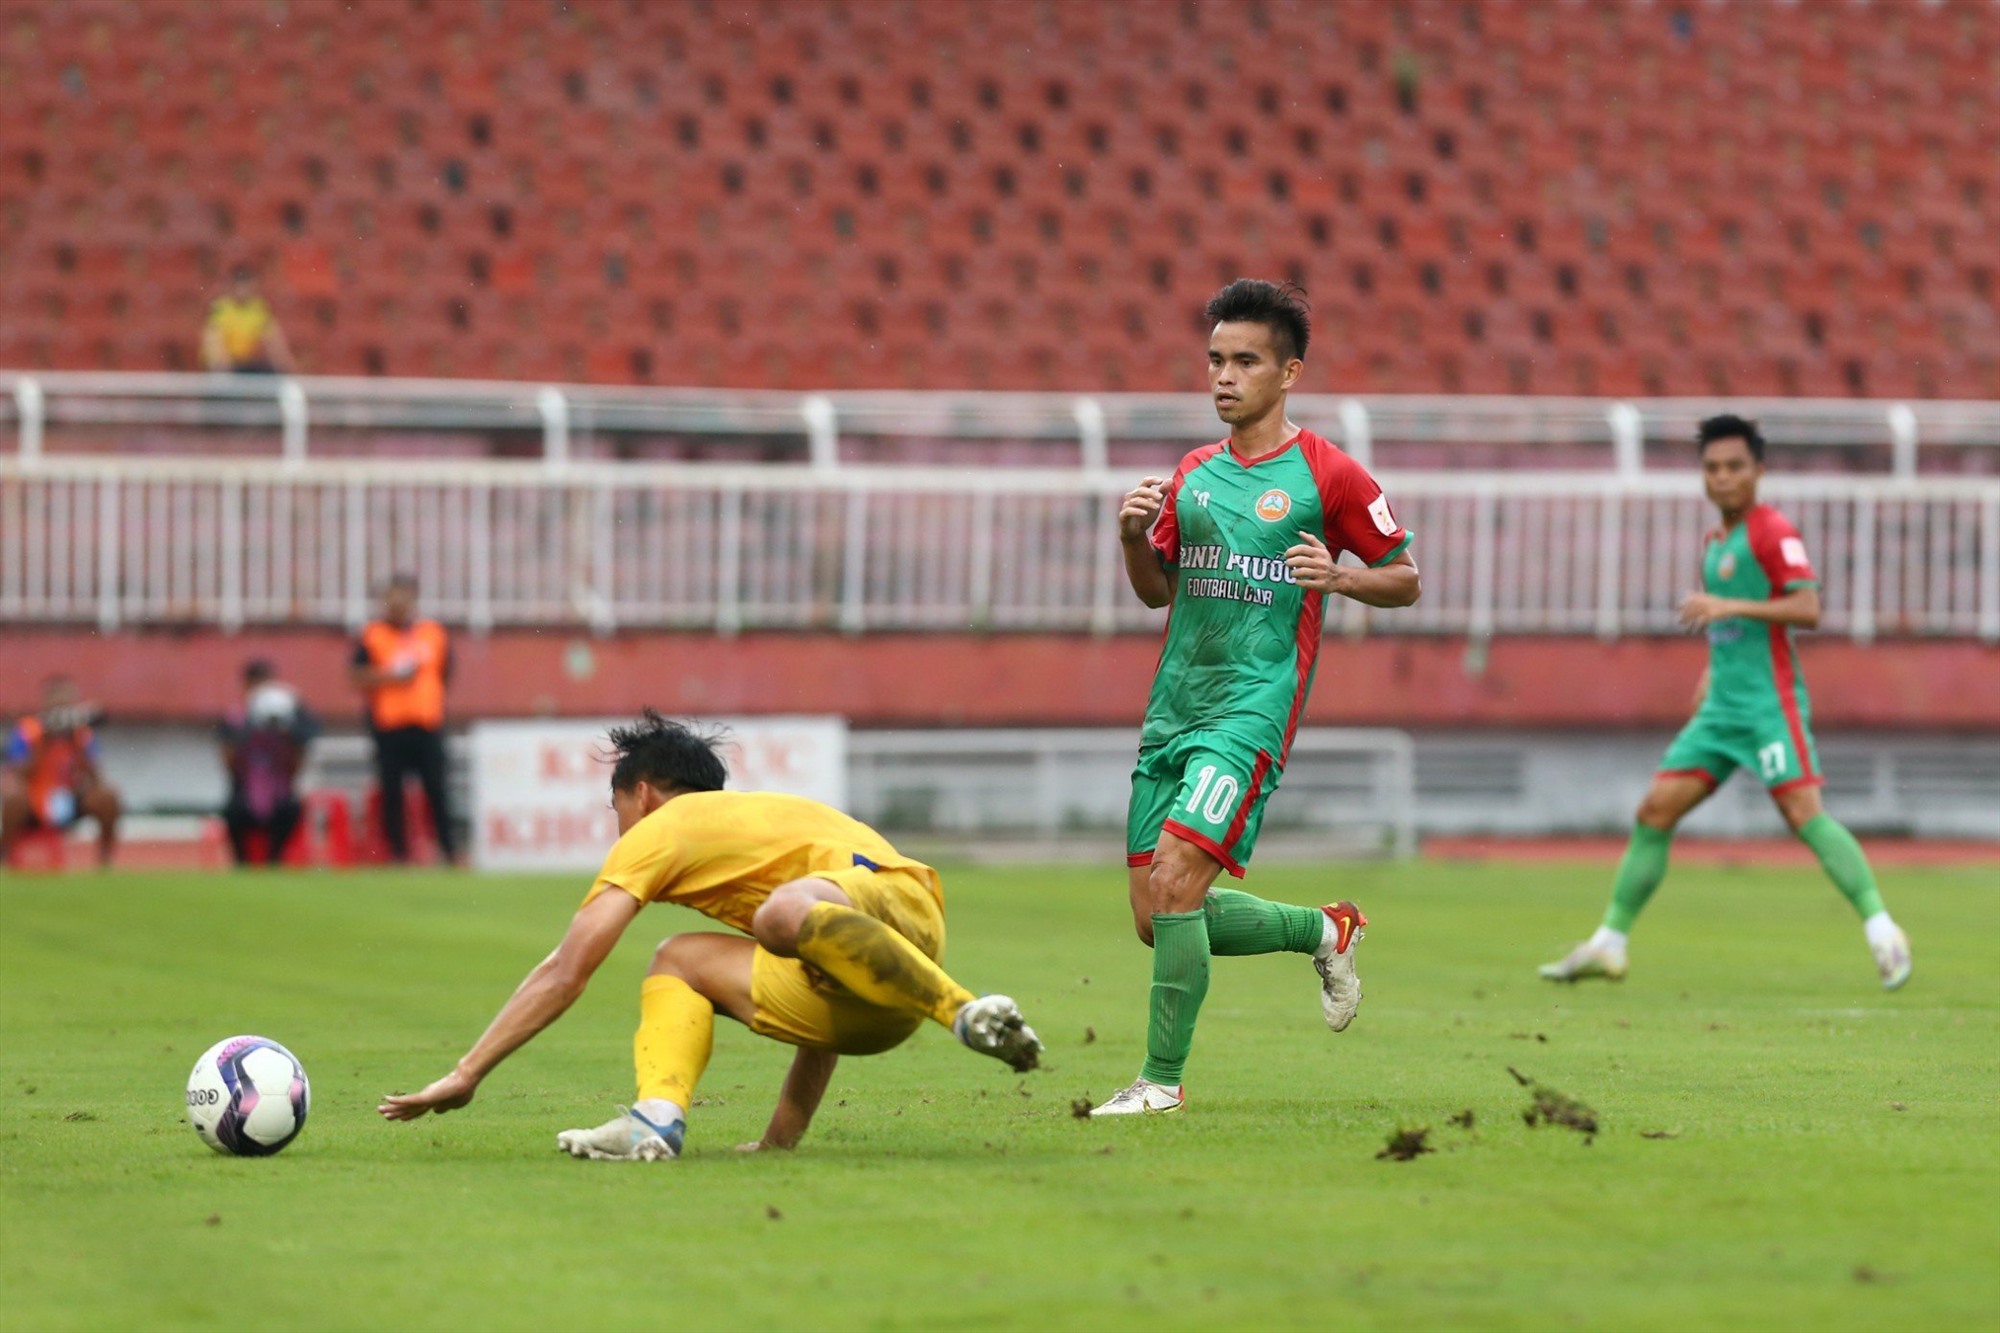 Sau 90 phút thi đấu, trận đấu kết thúc với tỉ số hoà 1-1. Kết quả này buộc cả Đắk Lắk và Bình Phước phải bước vào loạt luân lưu may rủi để phân thắng thua.